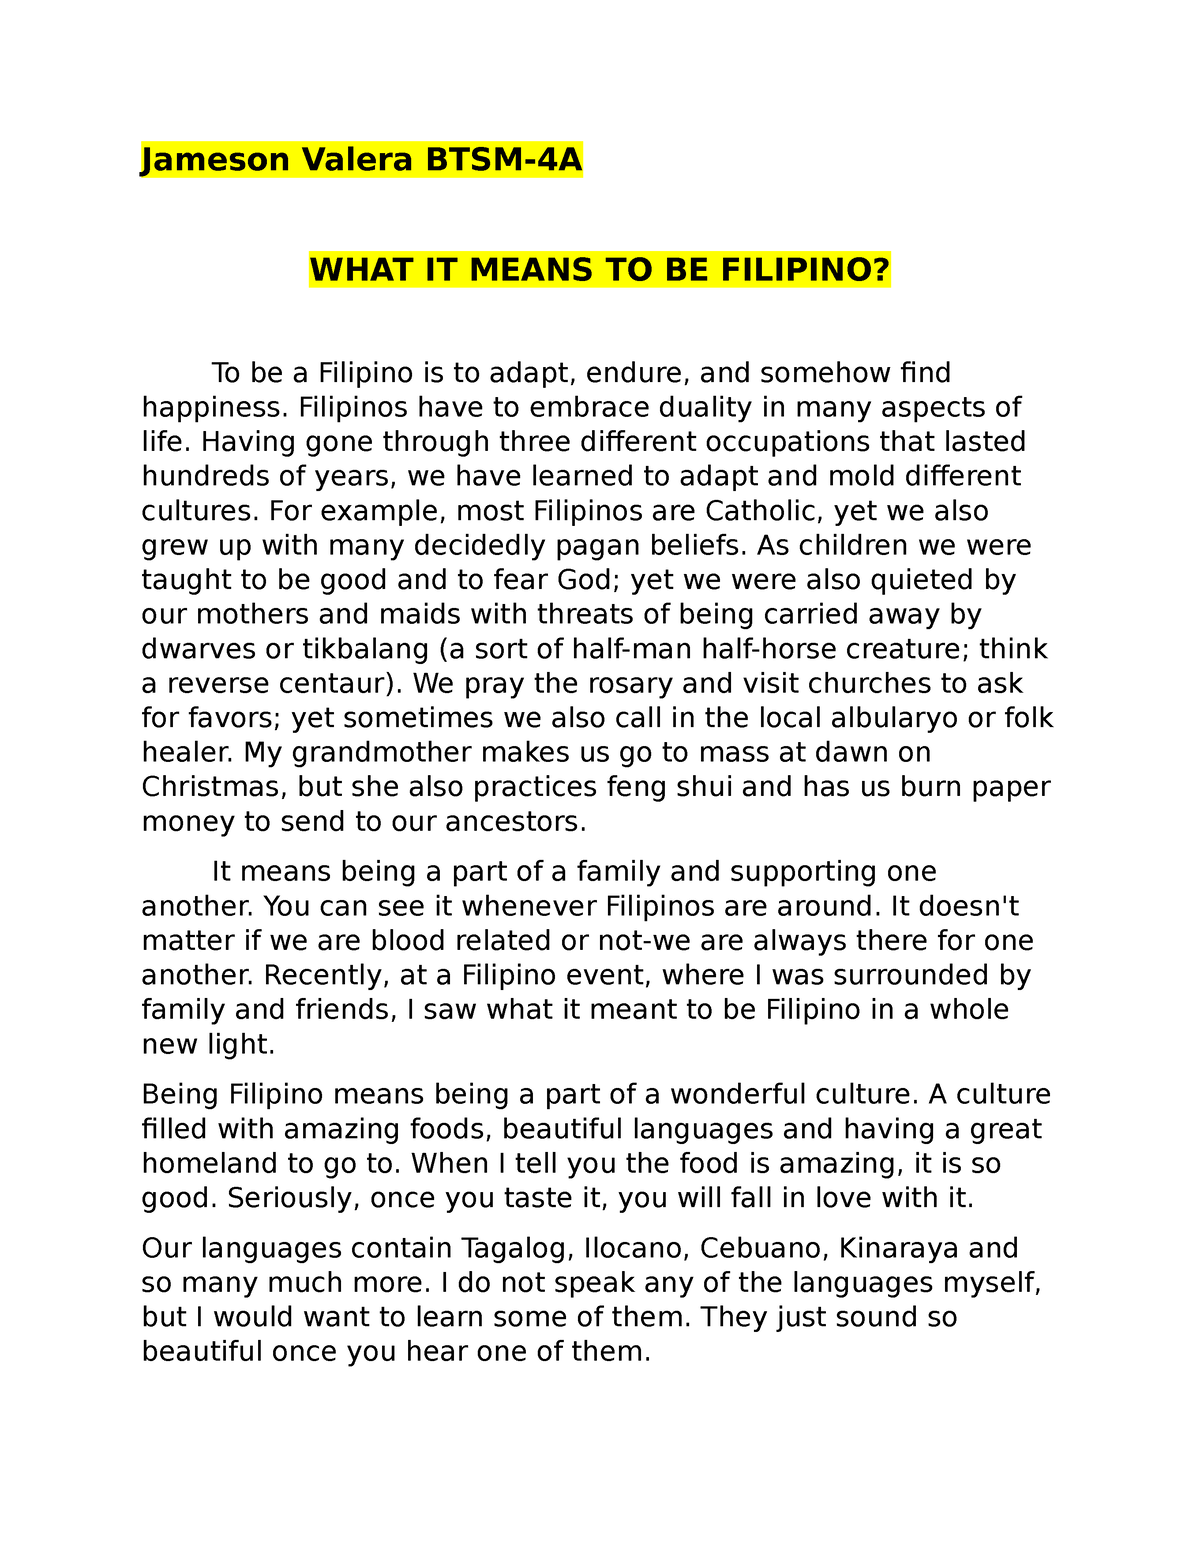 picture essay filipino